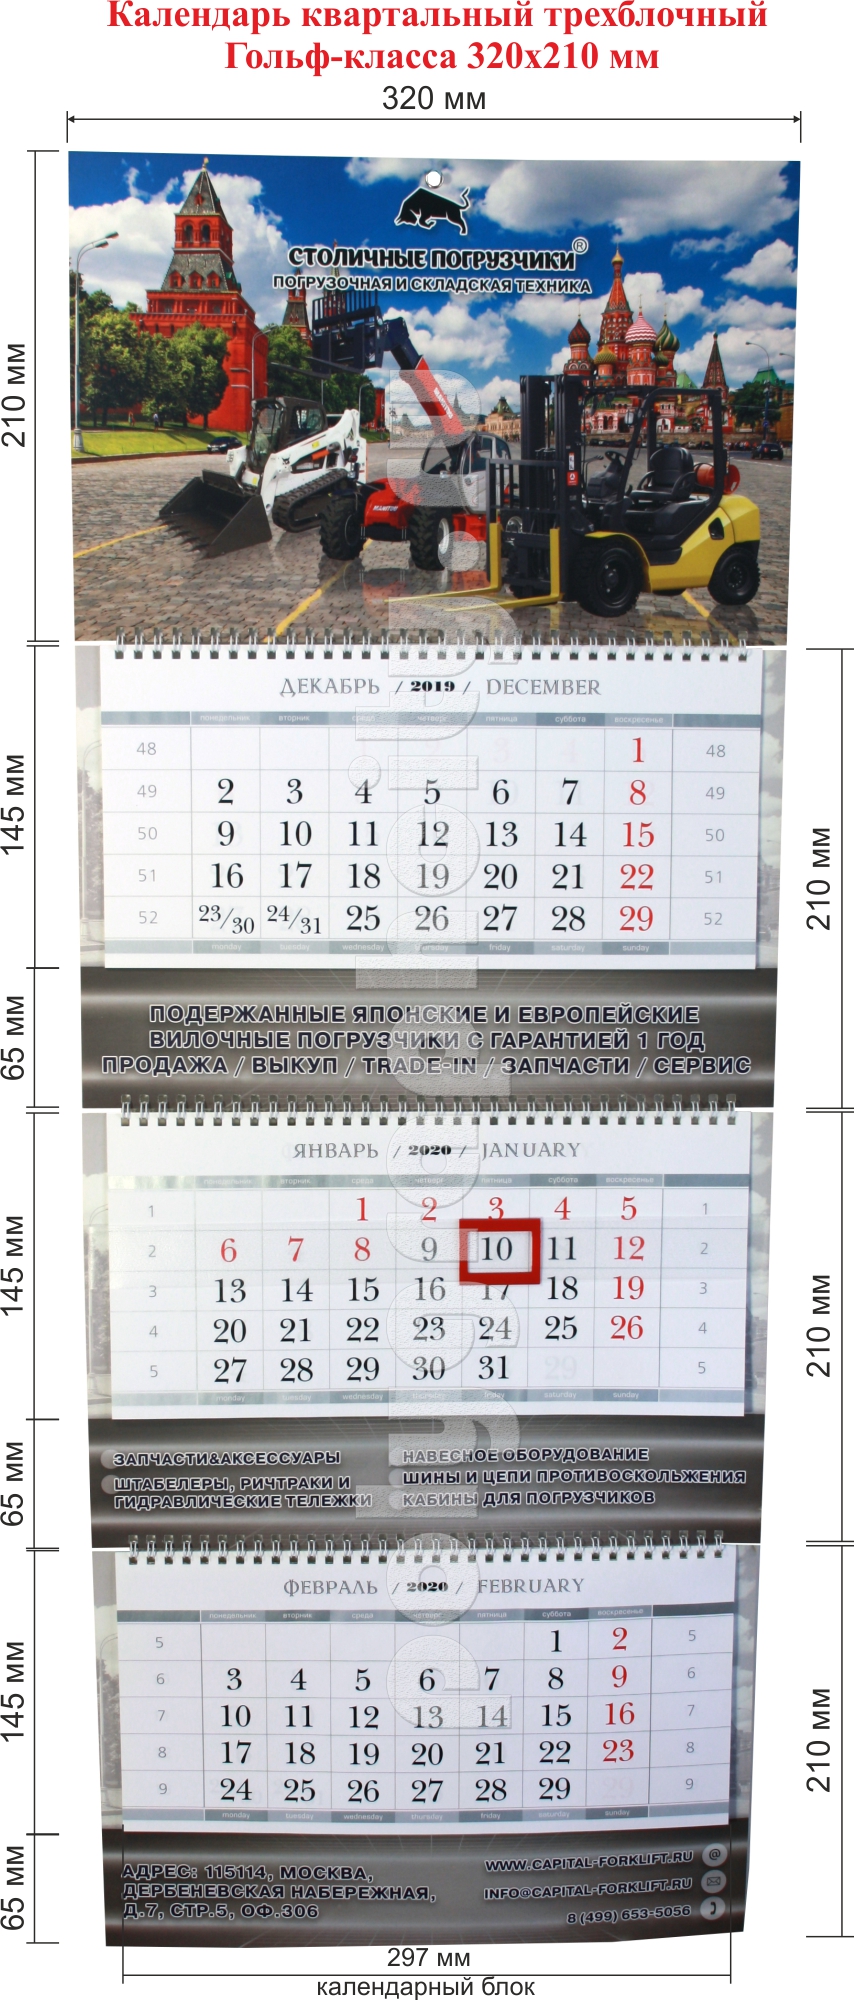 Квартальный календарь трехблочный на 2020 г. на 3-х пружинах размером 320х210 мм (Гольф-класс)